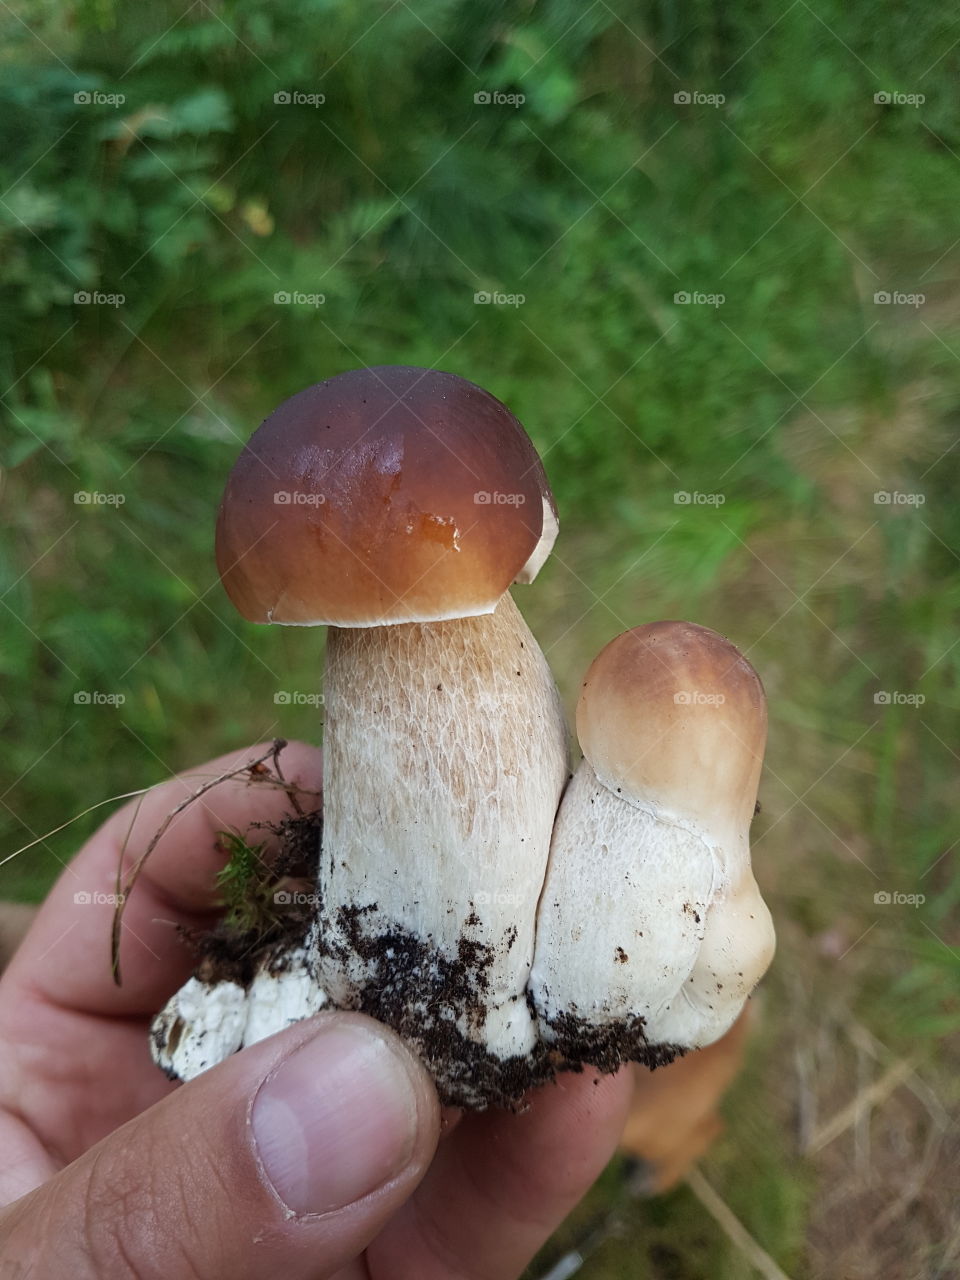 Fungus, Mushroom, Boletus, Fall, Nature